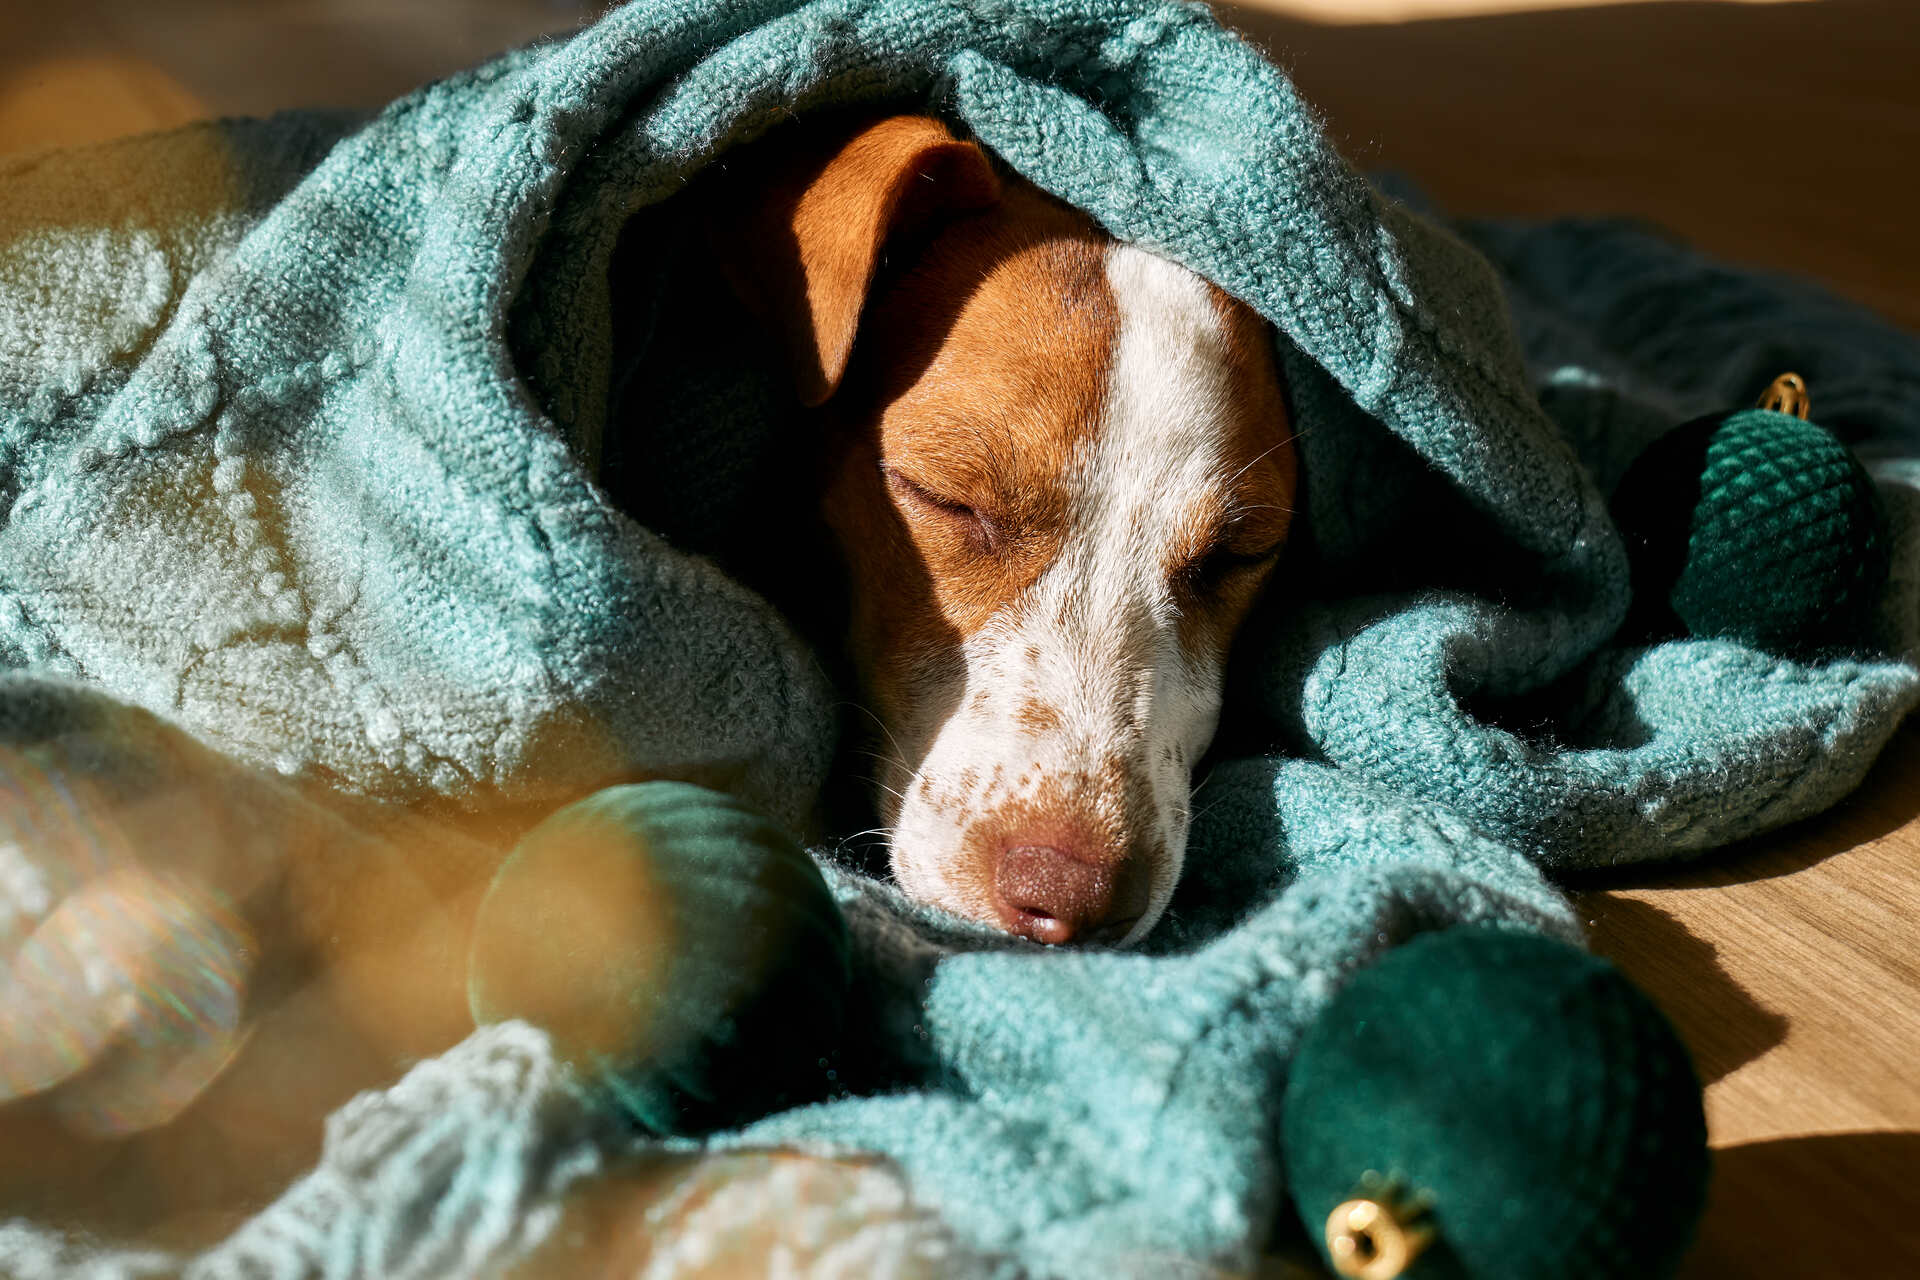 A sick dog lying under a blanket